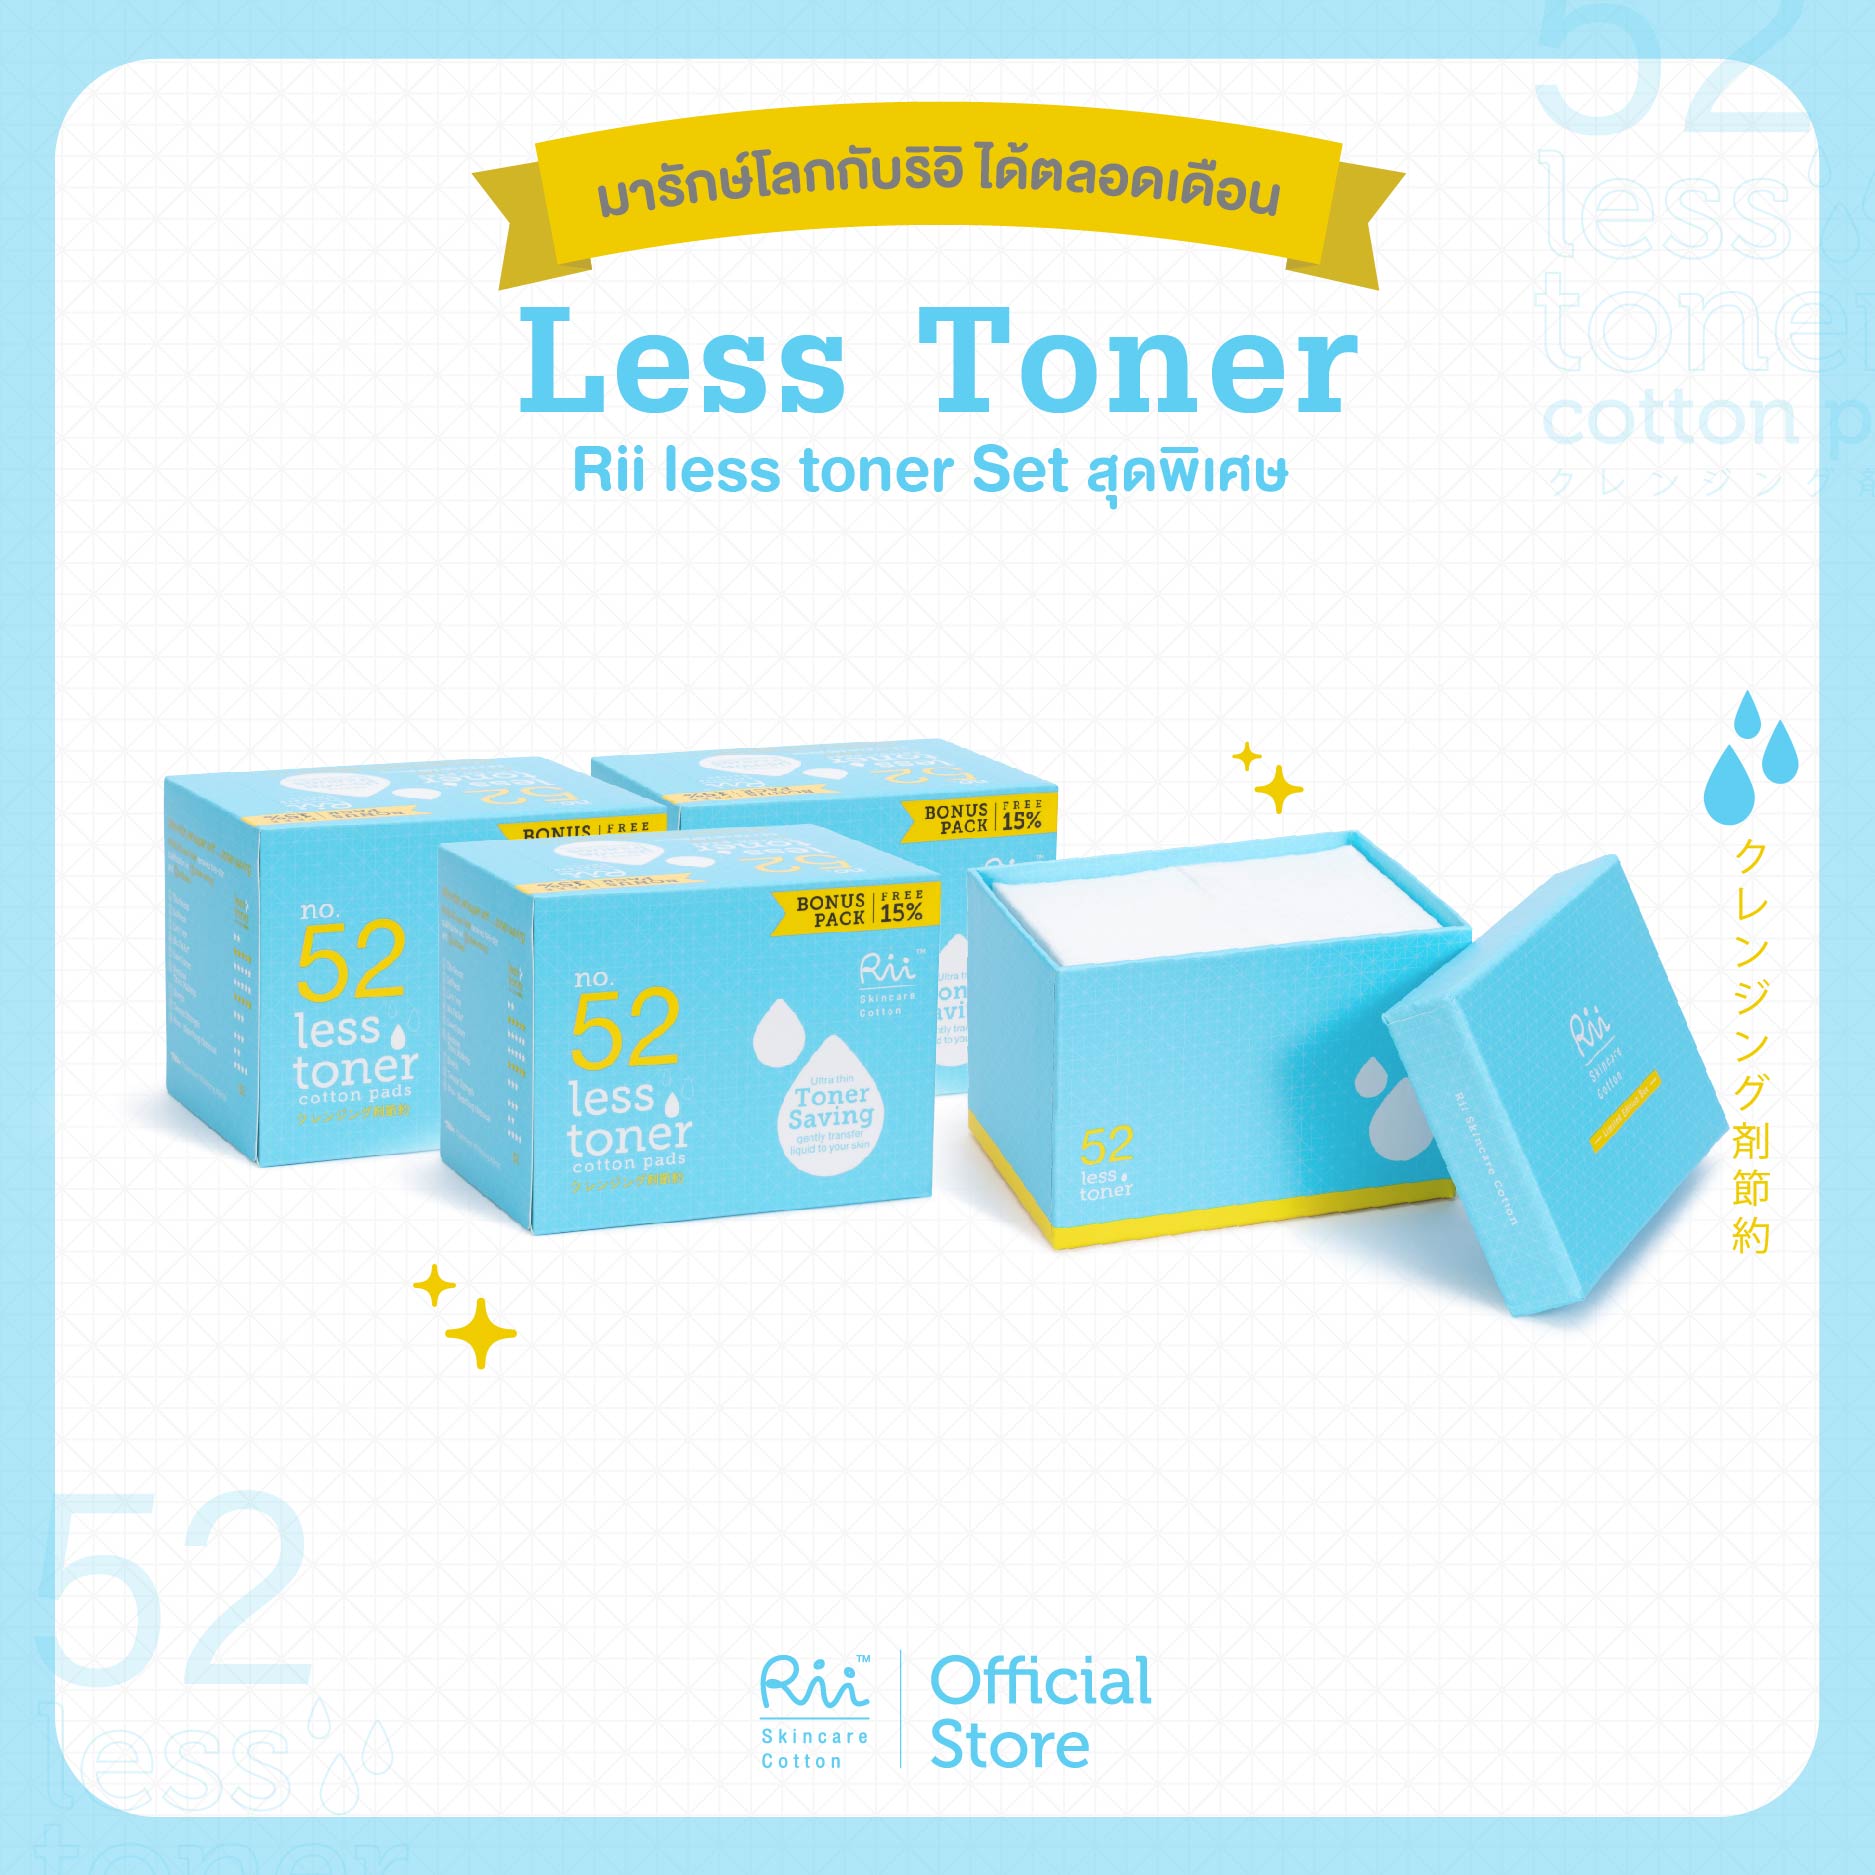 Rii 52 Less Toner 3 Box + Less Toner Limited